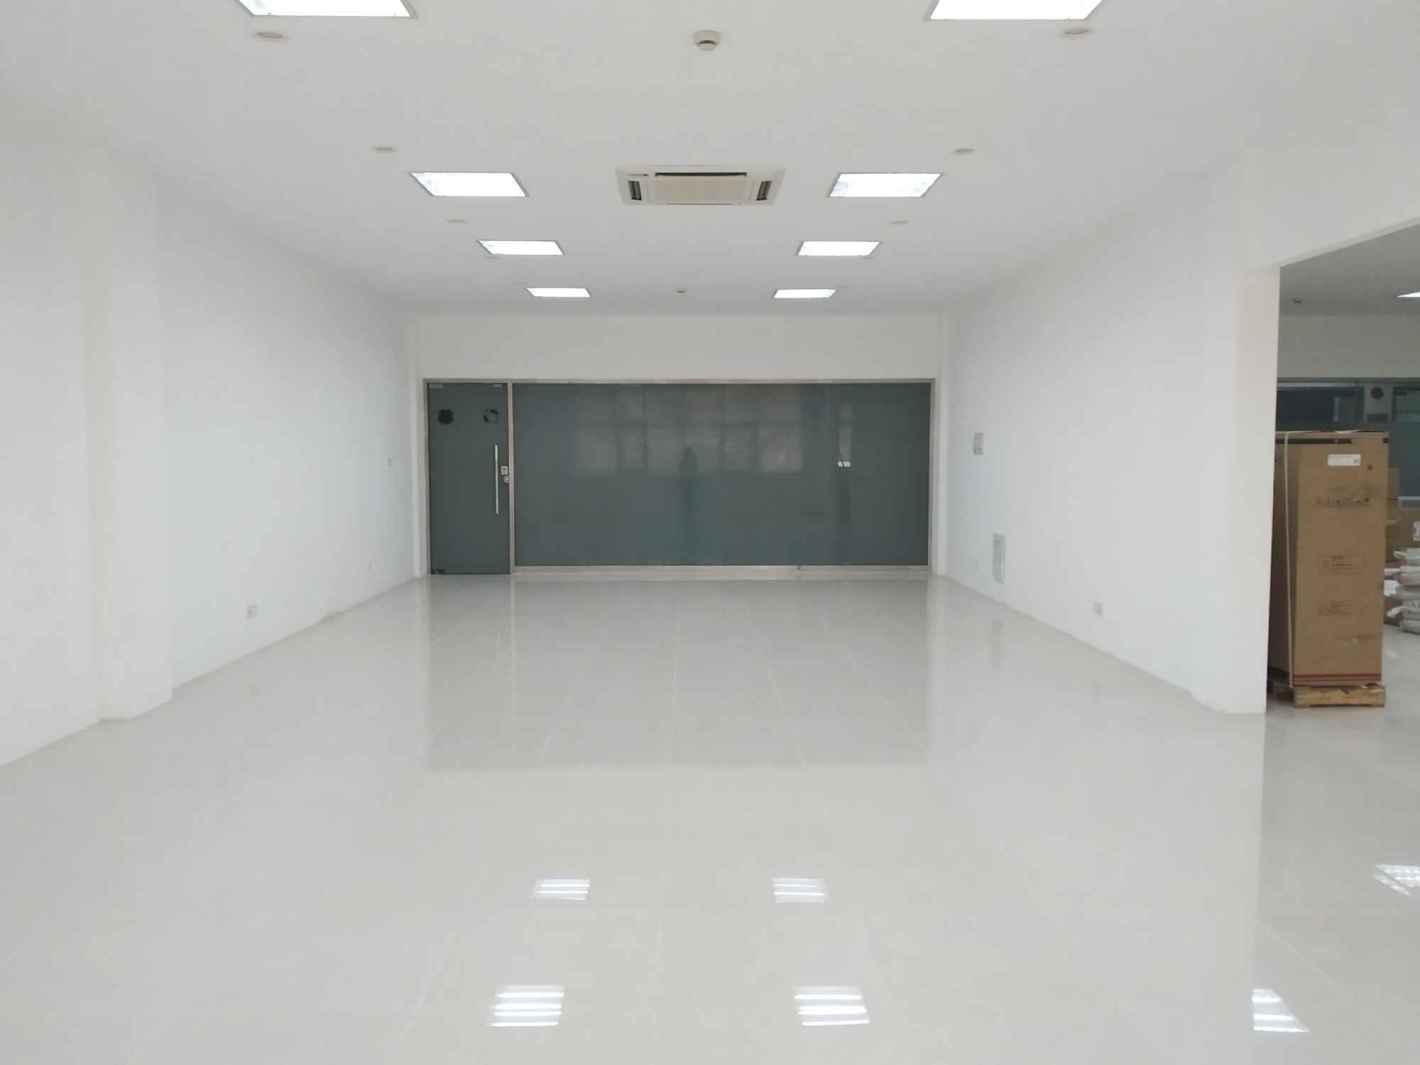 上海兴远科技产业园149平米办公室出租-租金价格3.55元/m²/天